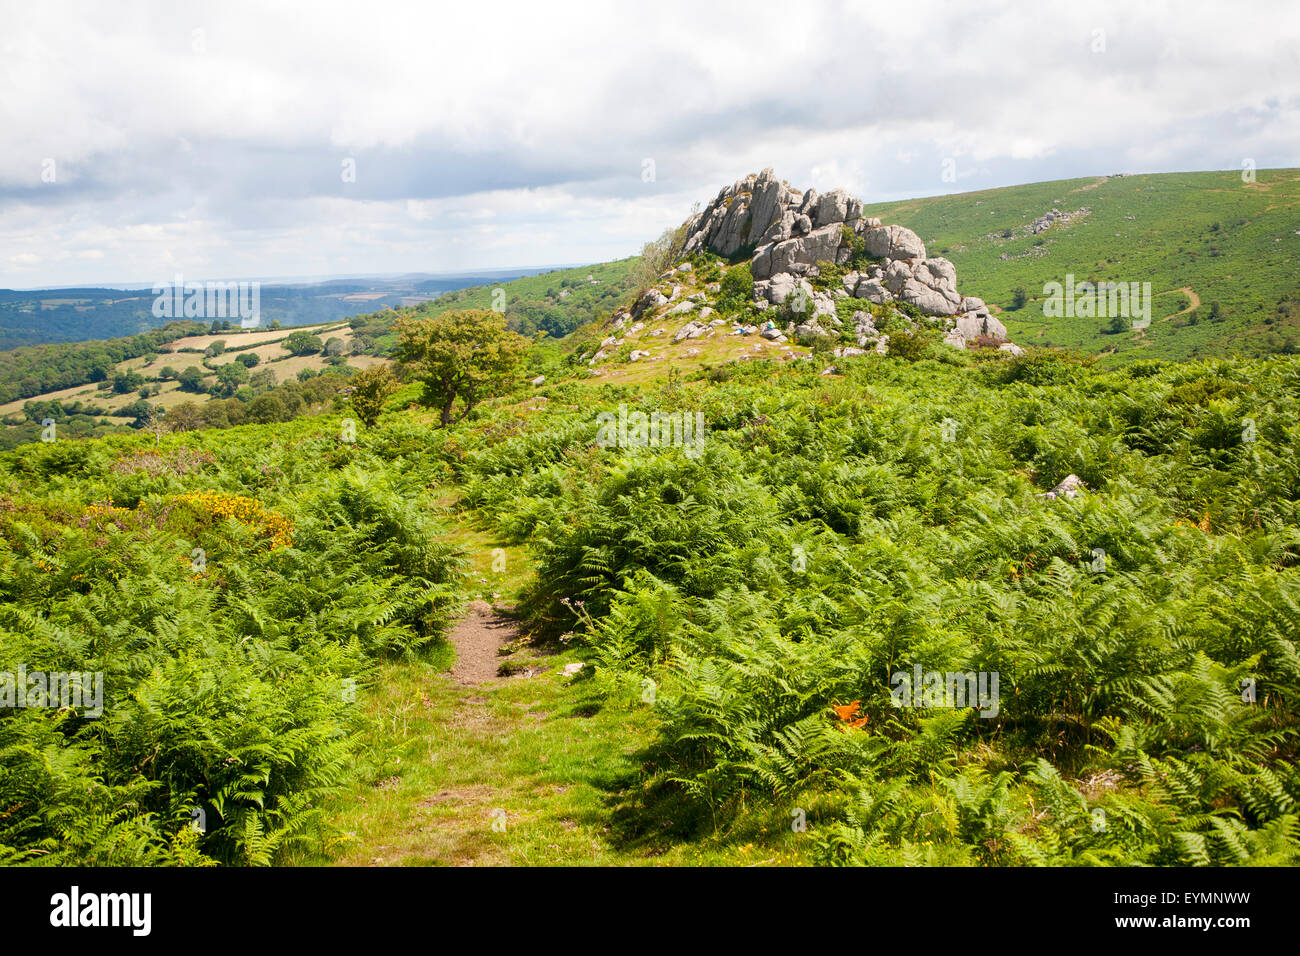 Paysage de montagne des roches de granit Greator, Dartmoor National Park, Devon, England, UK Banque D'Images